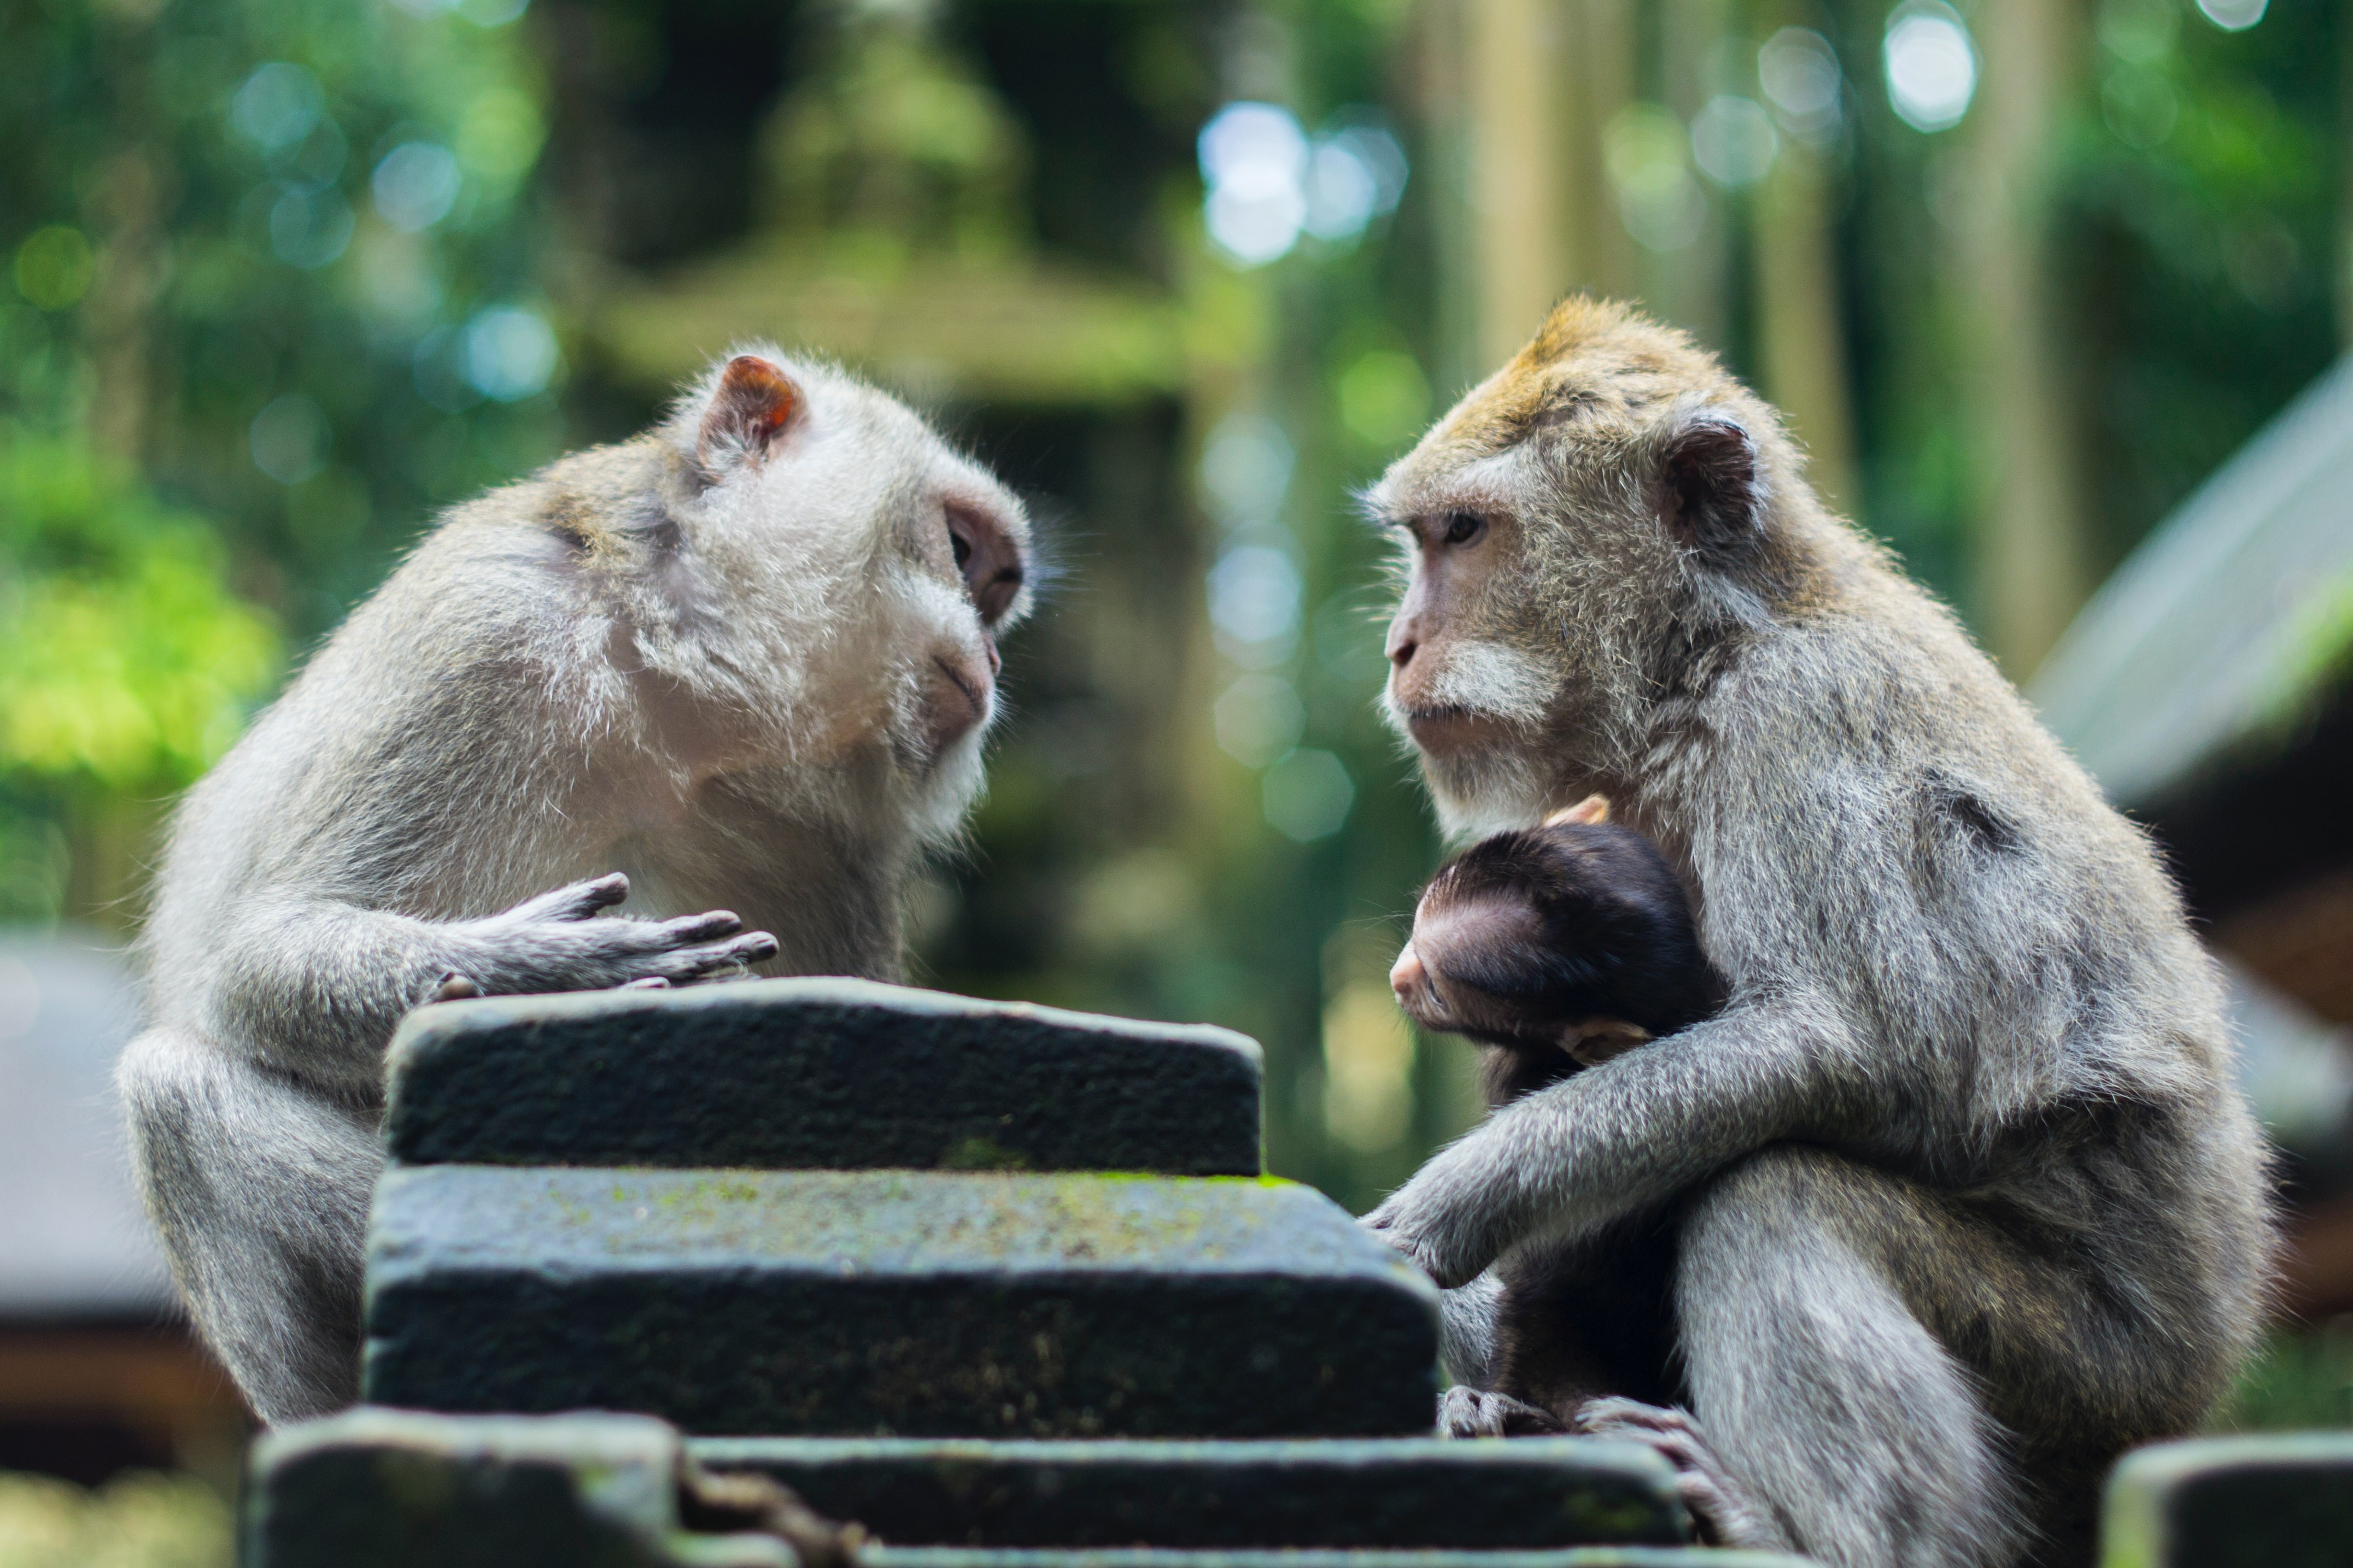 Diferentemente de humanos, outros primatas possuem membrana vocal encontradas próximas ou conectadas às pregas vocais (Foto: Reprodução/Mihai Surdu no Unsplash)